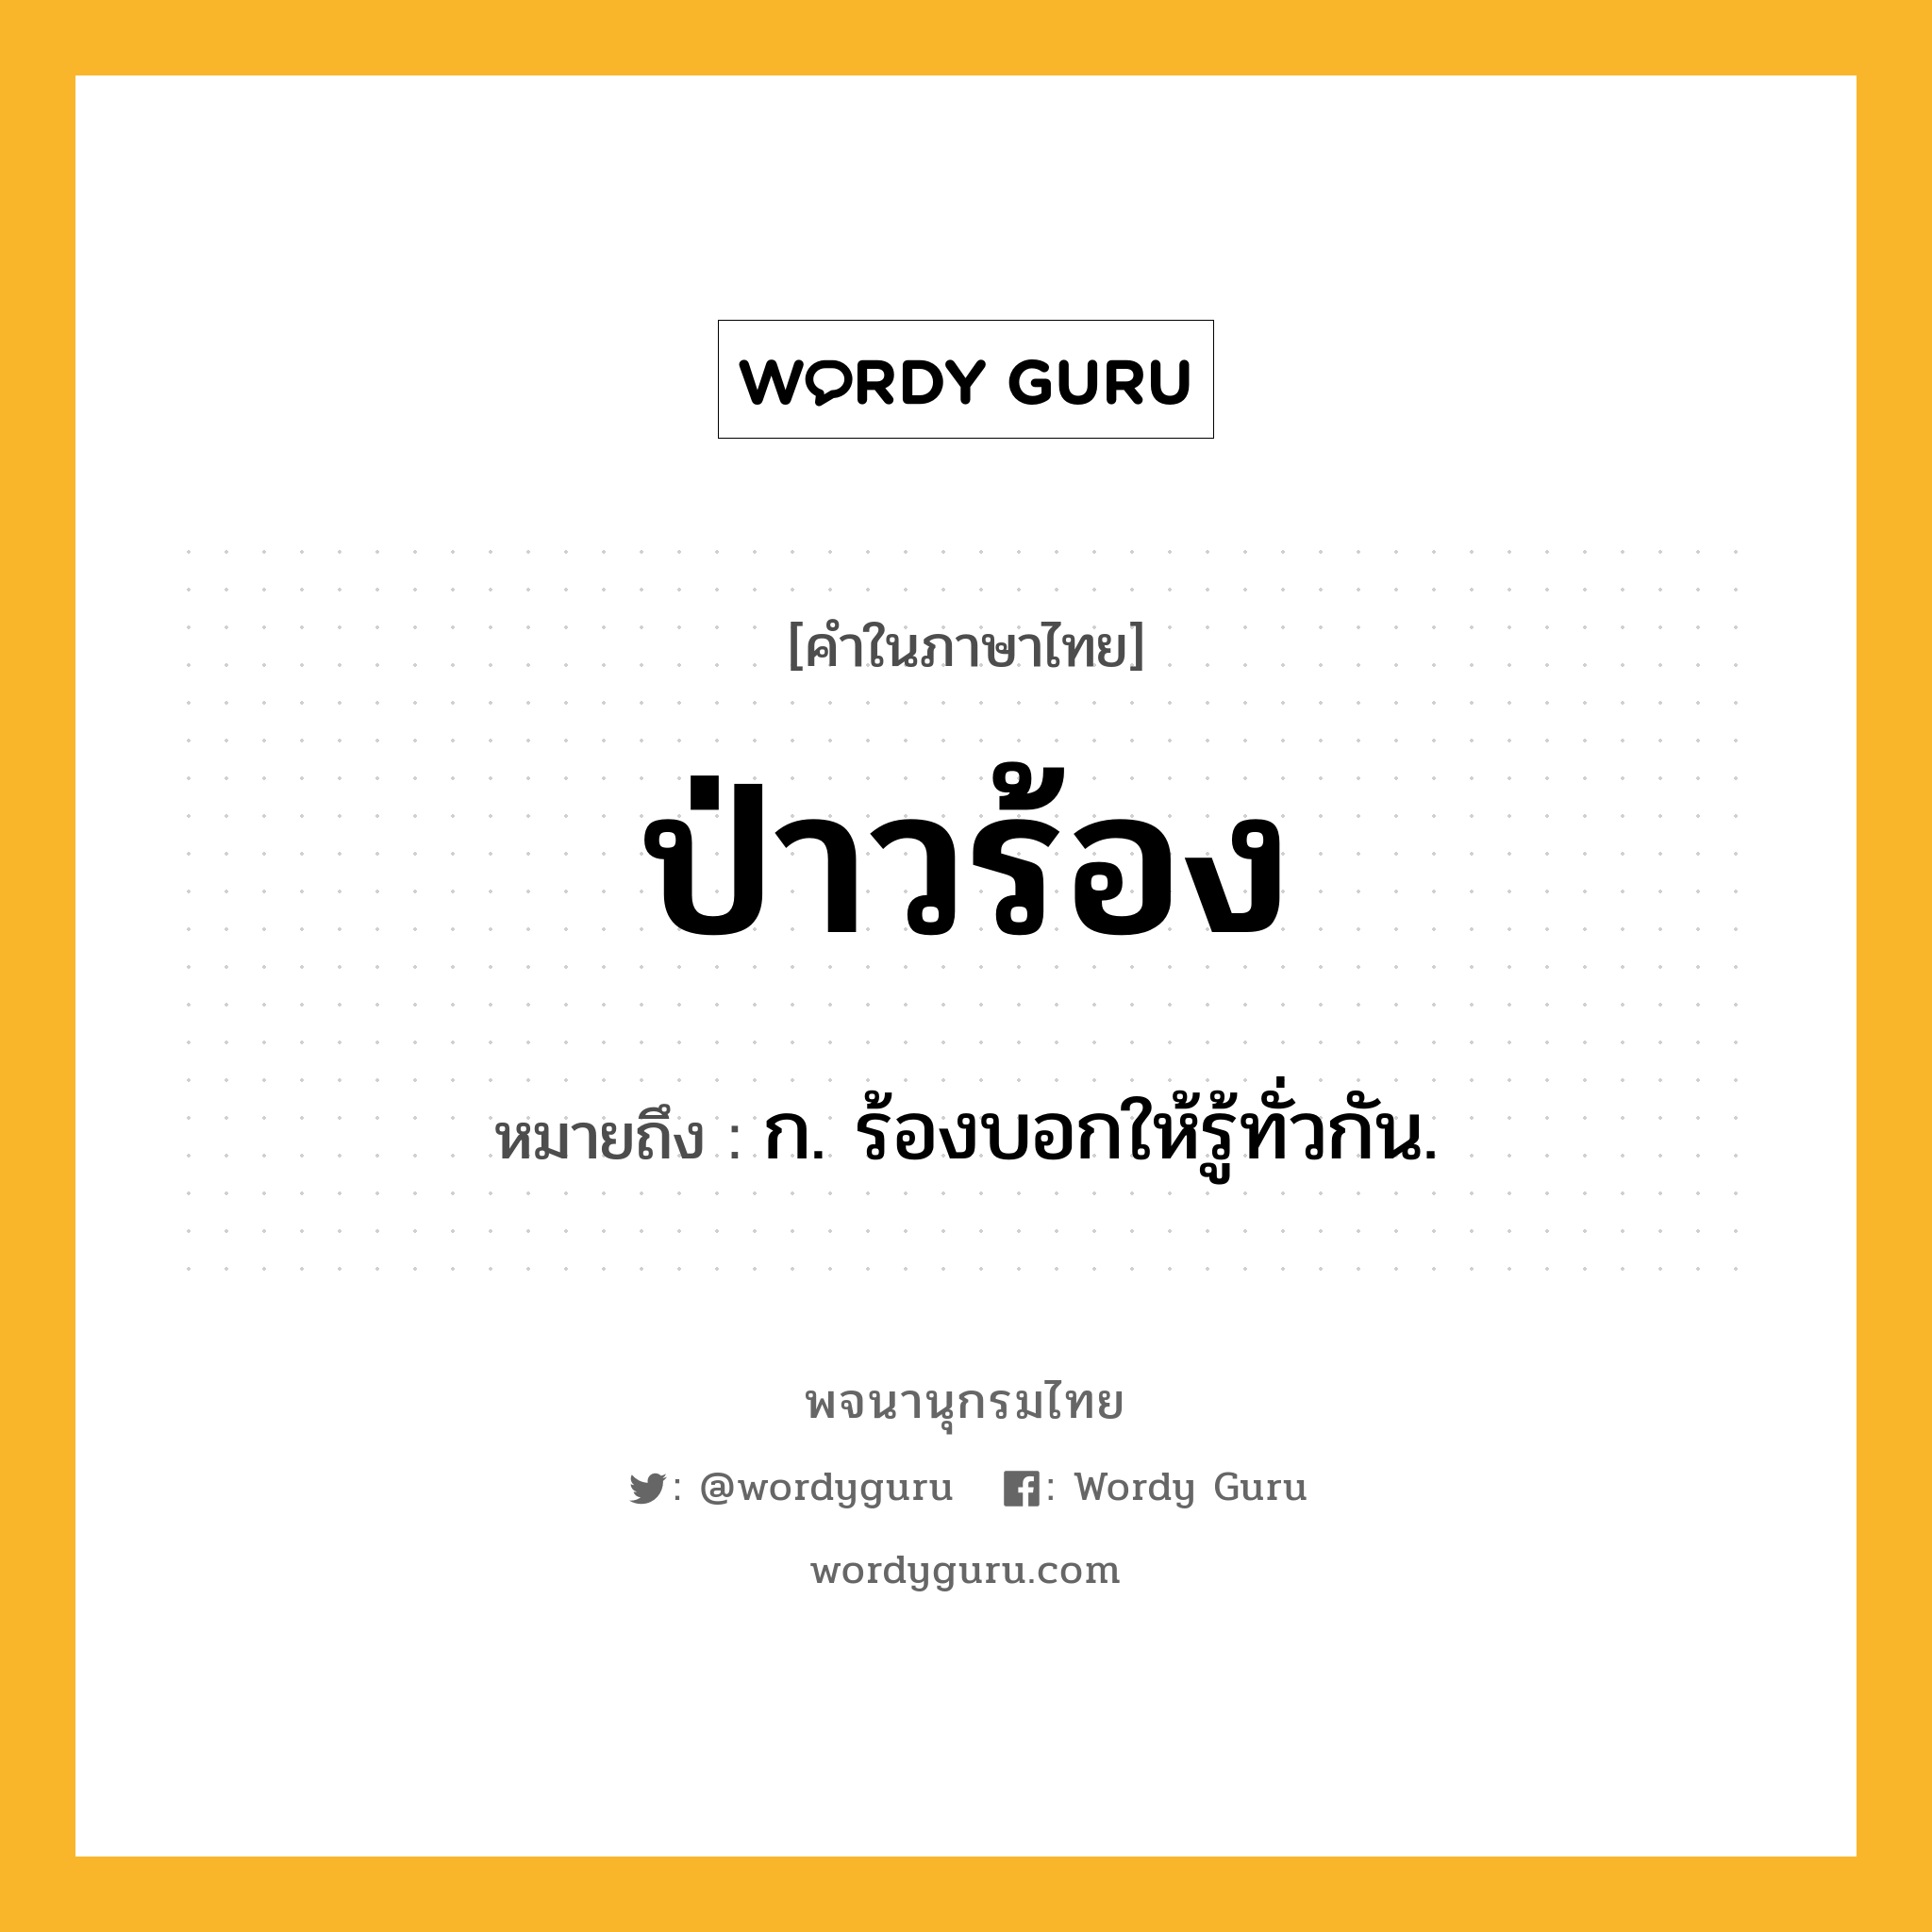 ป่าวร้อง หมายถึงอะไร?, คำในภาษาไทย ป่าวร้อง หมายถึง ก. ร้องบอกให้รู้ทั่วกัน.